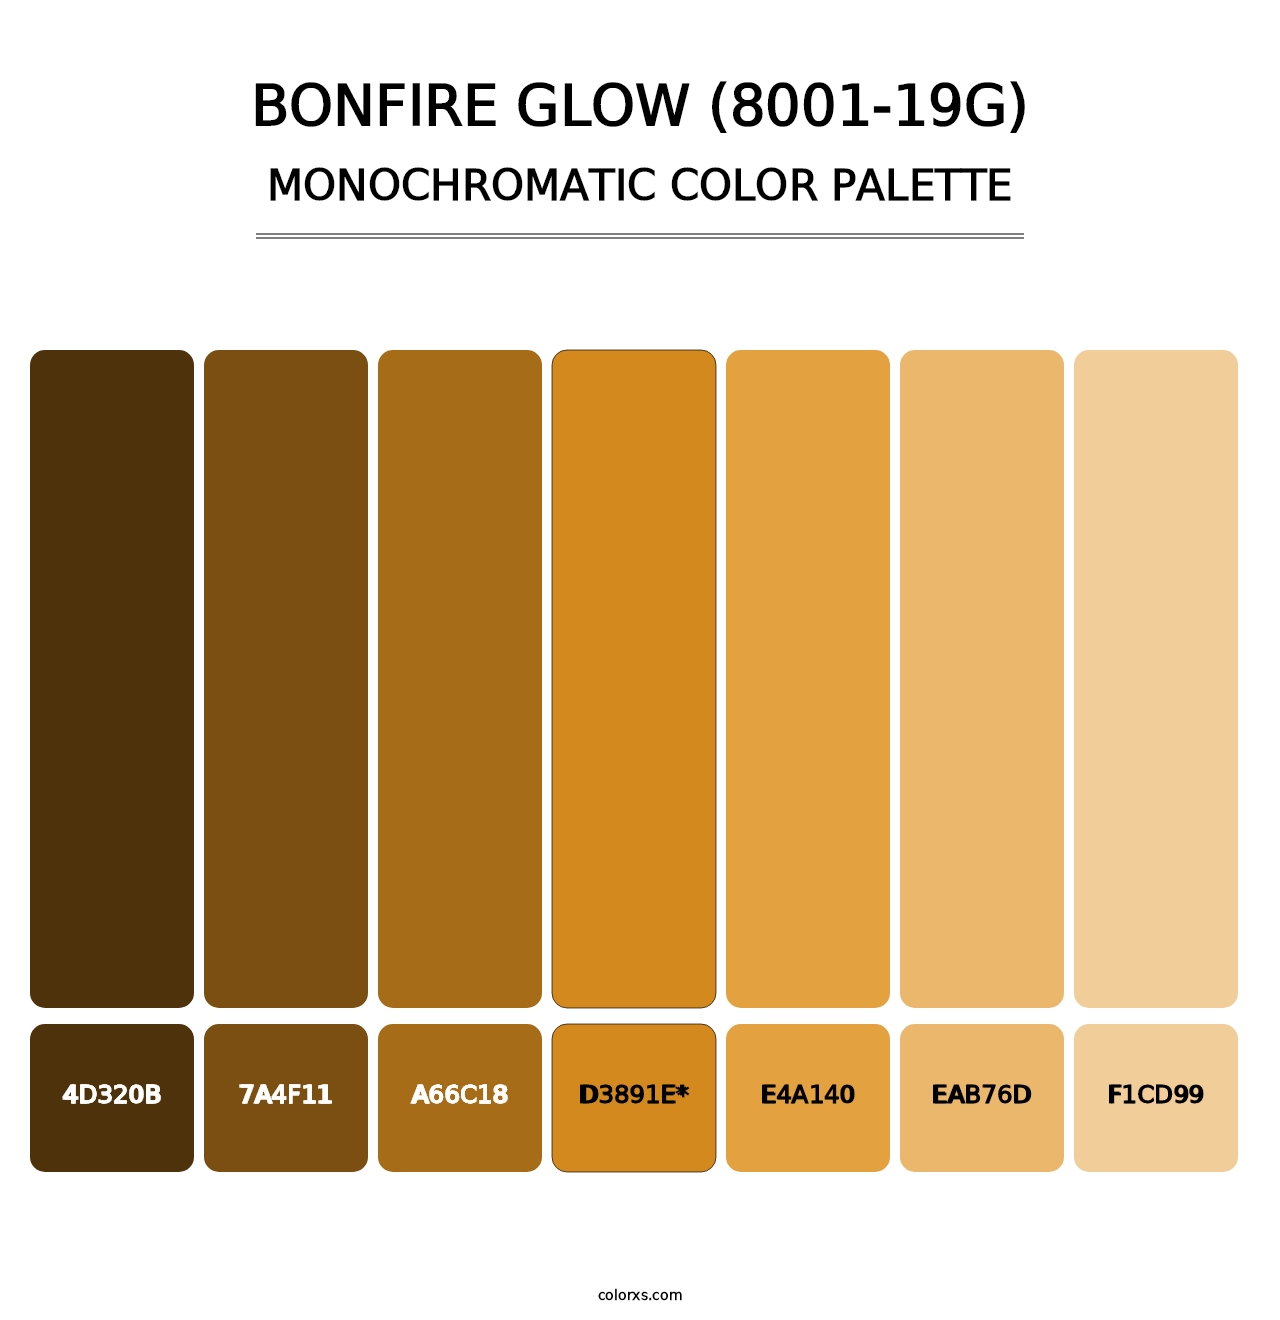 Bonfire Glow (8001-19G) - Monochromatic Color Palette